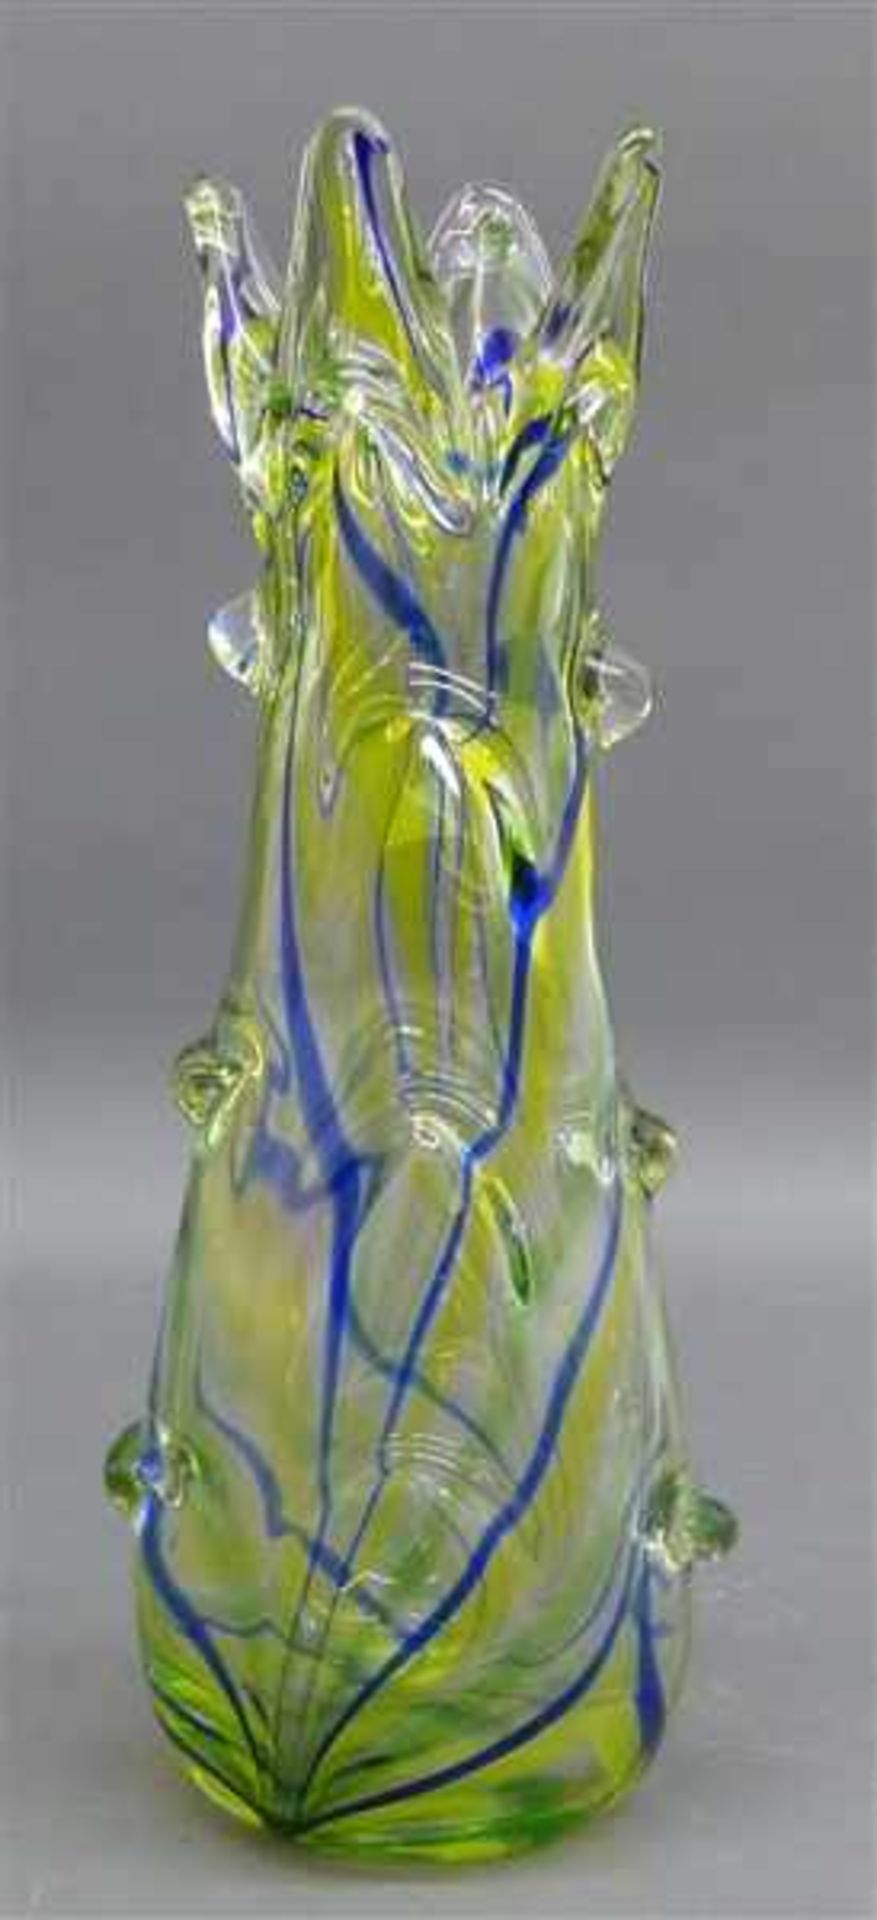 ZiervaseKristallglas, Murano, grünlich eingefärbt, blaue Einschmelzungen, Noppendekor, h 36 cm,